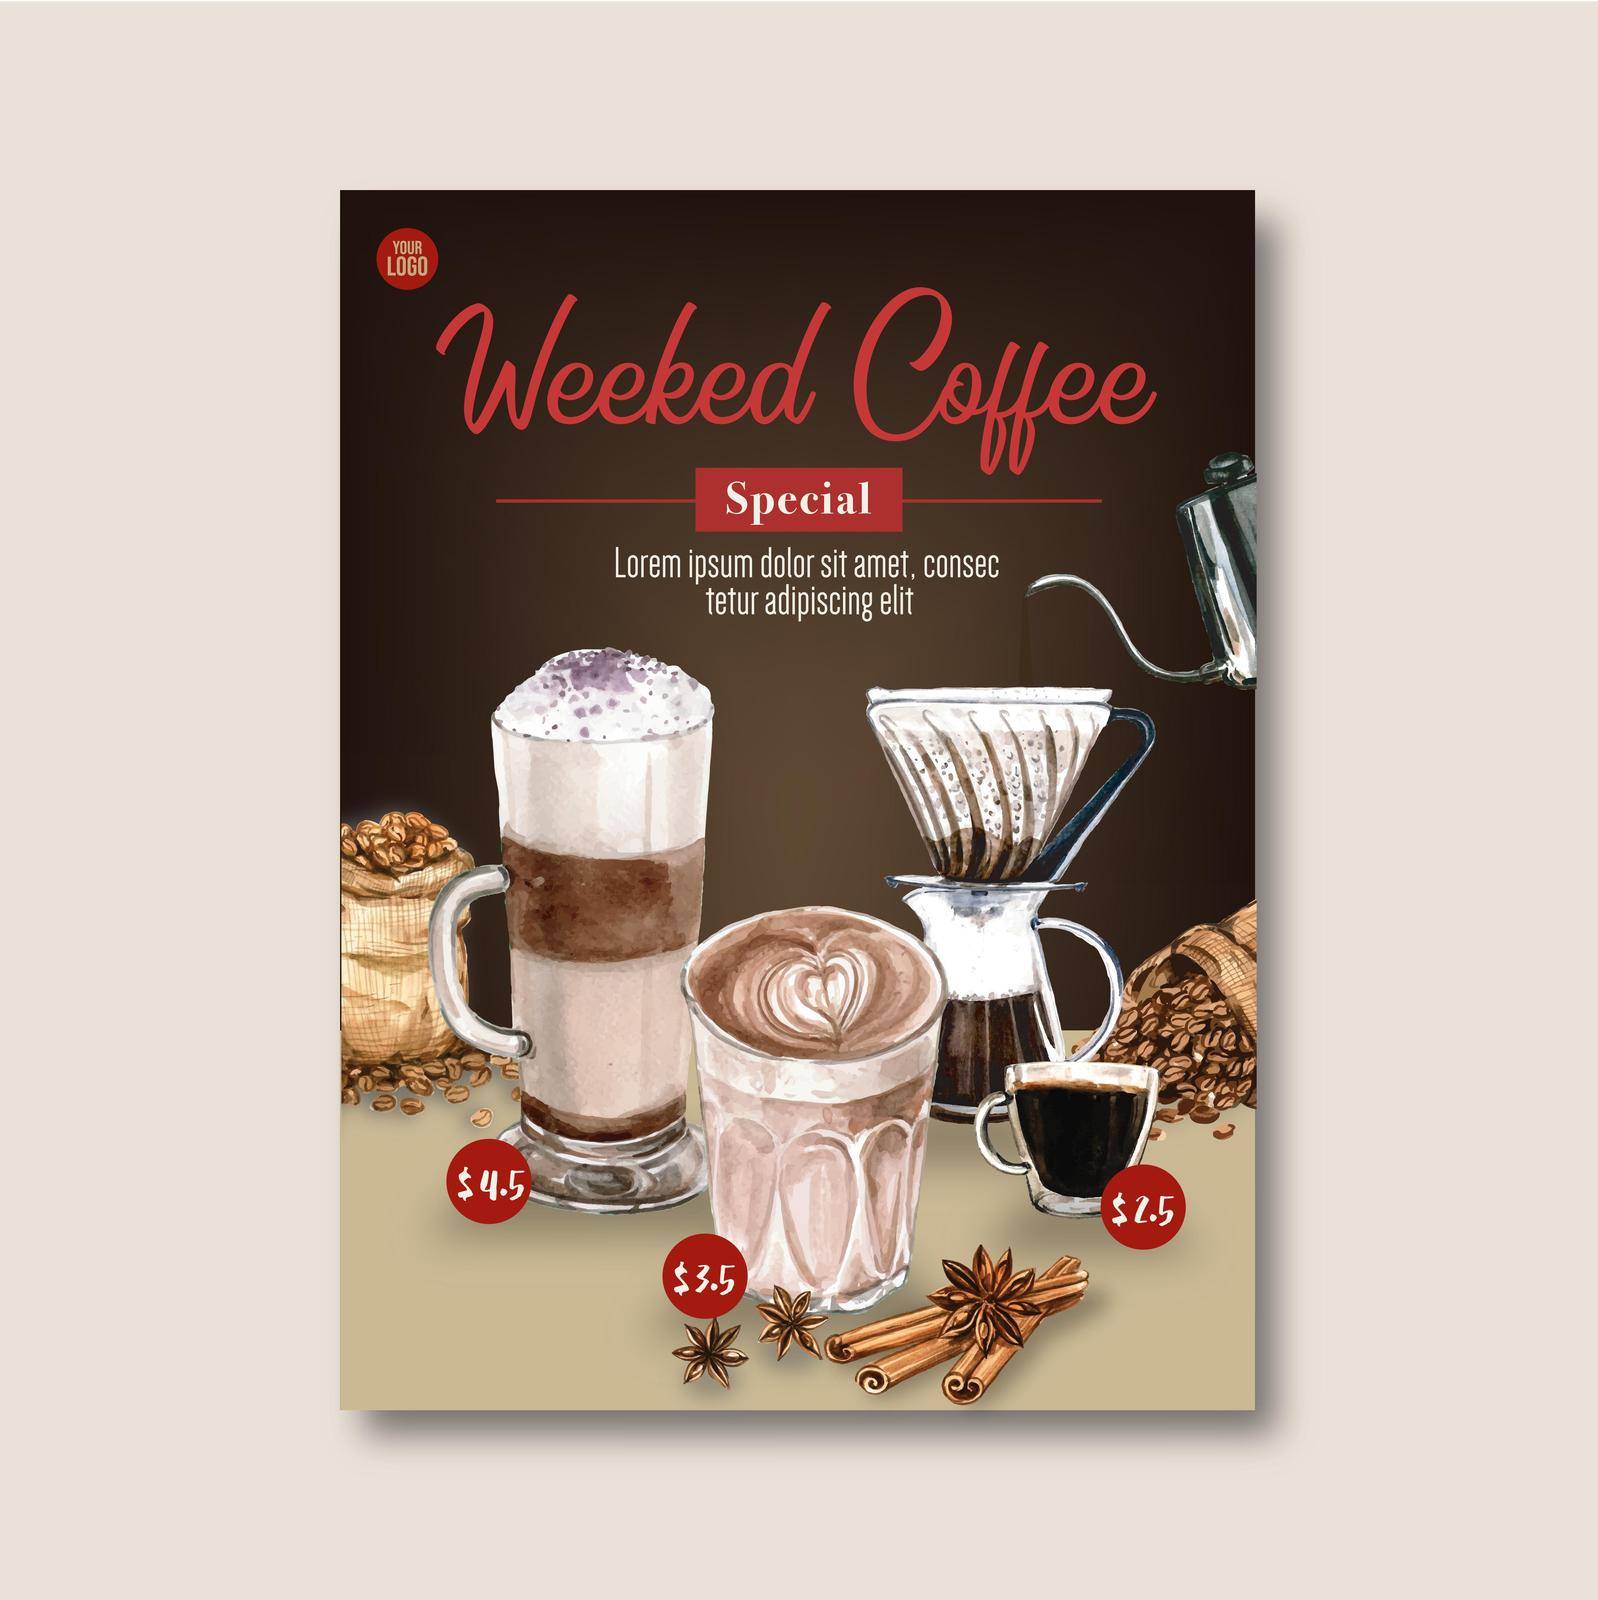 americano ,cappuccino, espresso coffee poster discount, template design, watercolor illustration